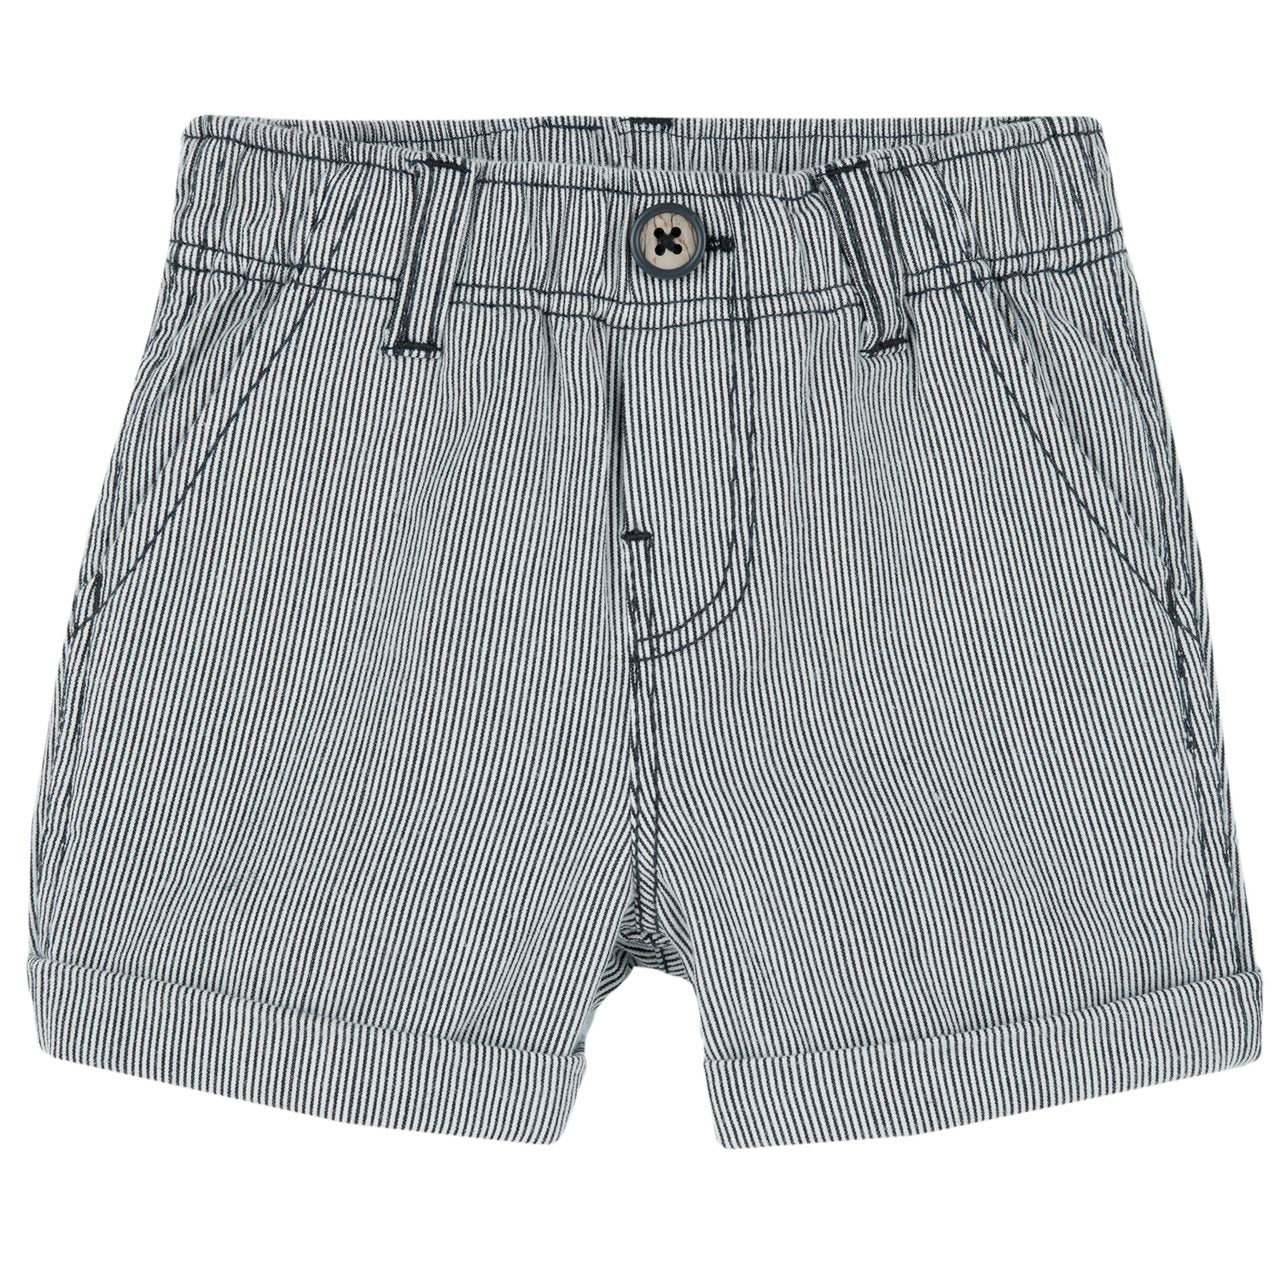 Pantaloni corti di cotone millerighe - CHICCO OUTLET